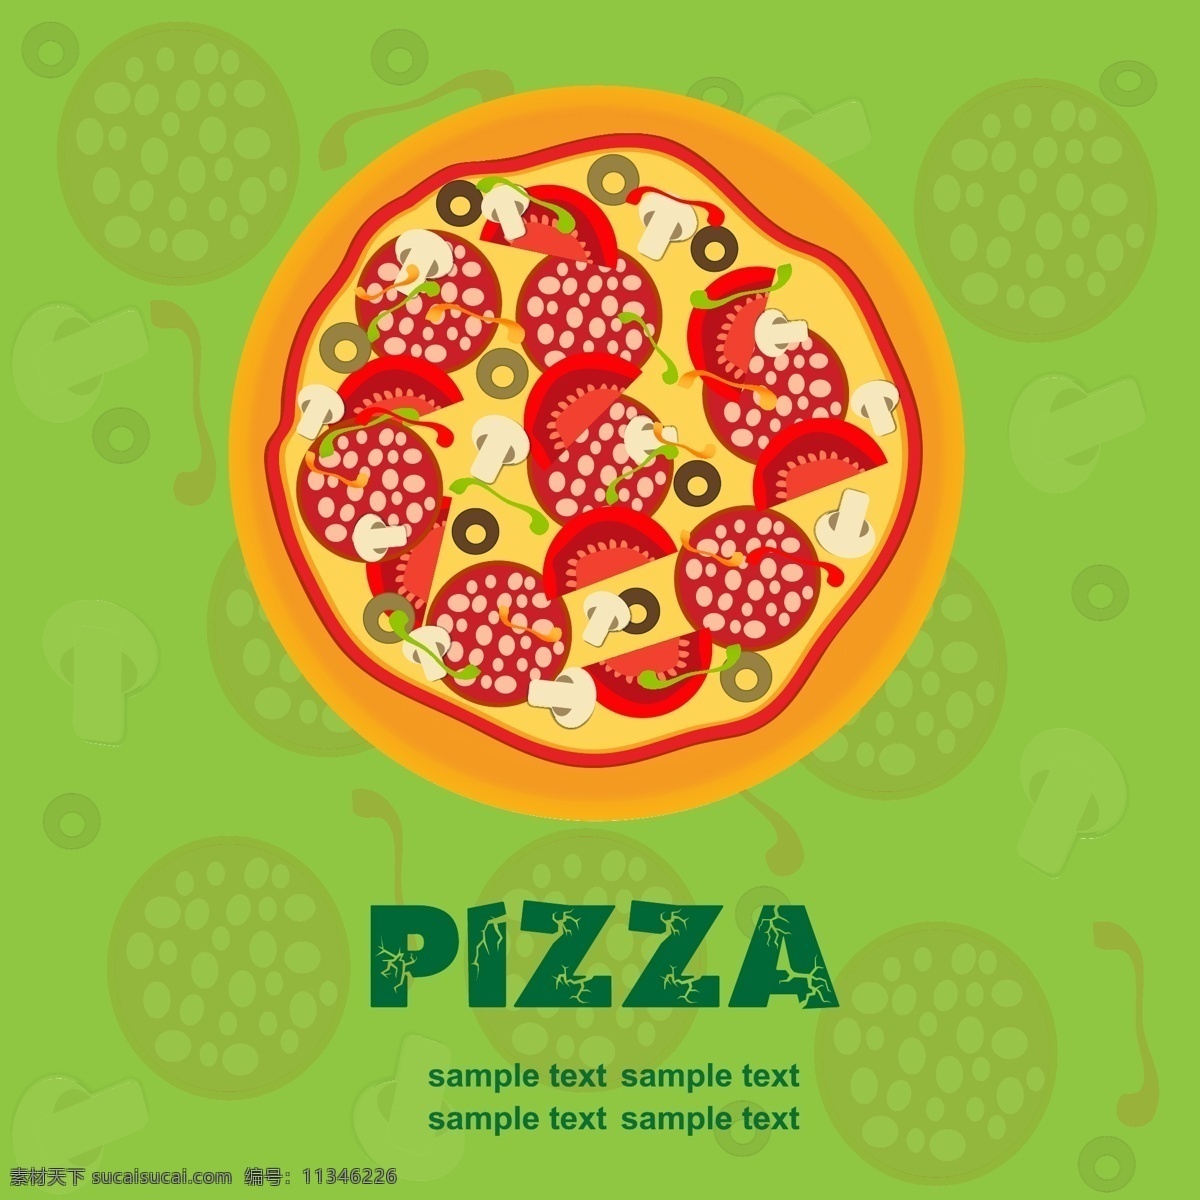 比萨 插画 矢量 背景 卡通 流行 食品 图案 西方 illustrator 比萨饼 海报 矢量图 矢量人物